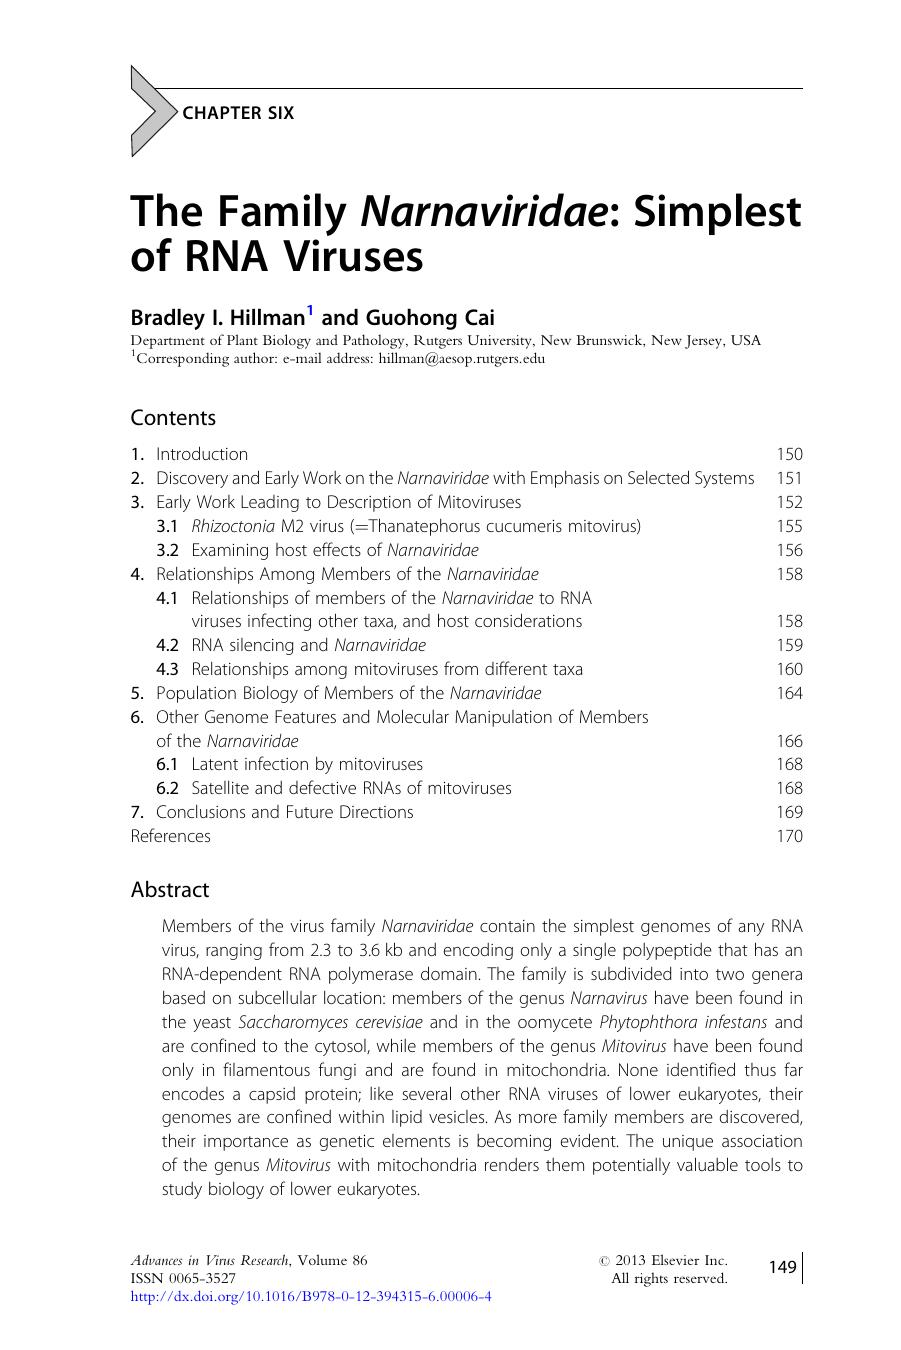 The Family Narnaviridae: Simplest of RNA Viruses by Bradley I. Hillman & Guohong Cai